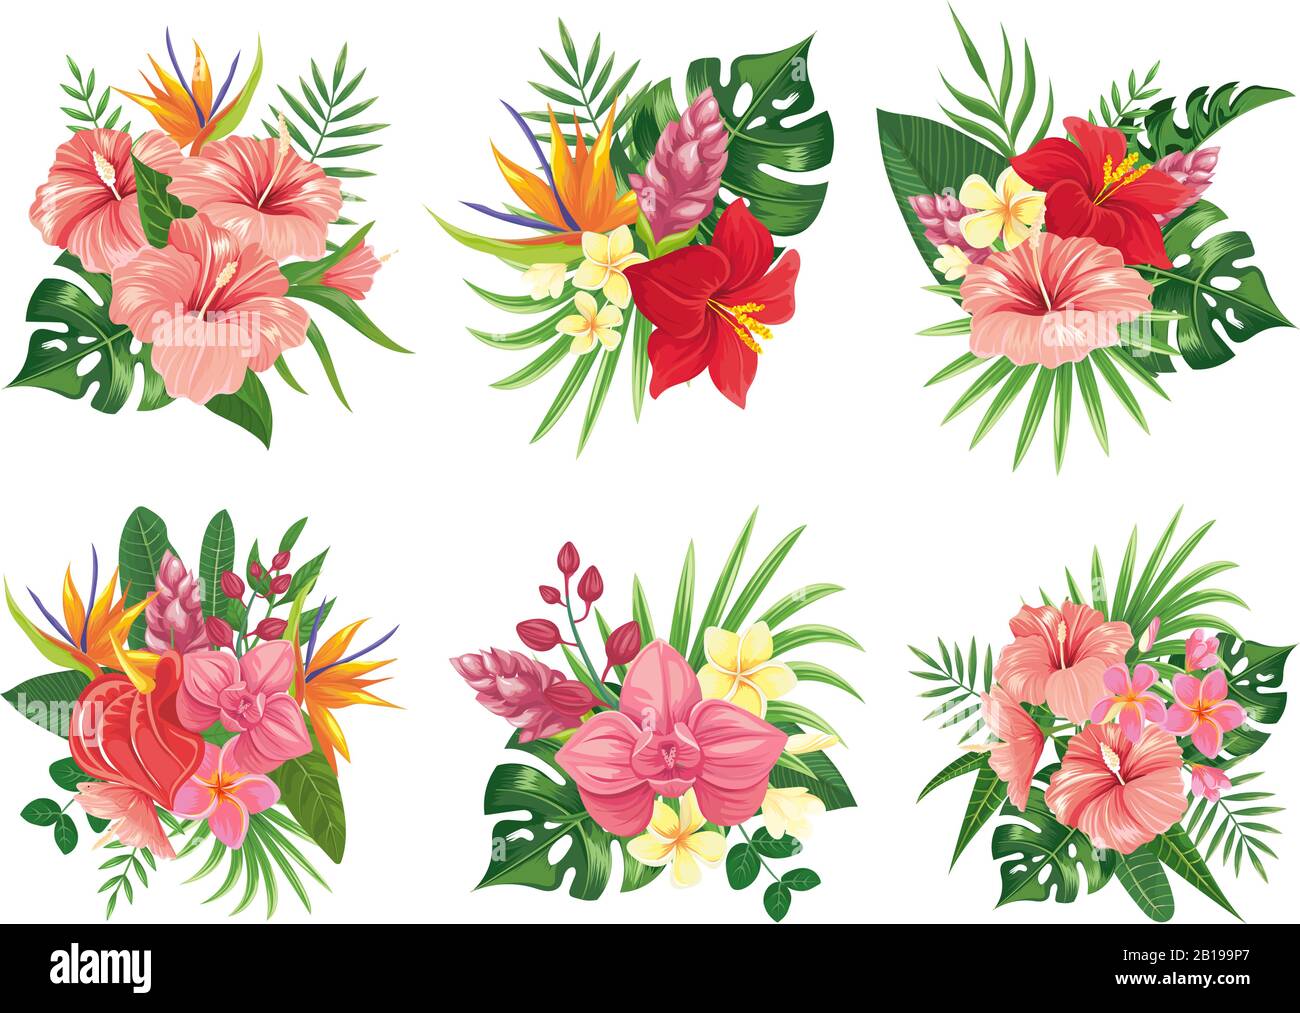 Blumenstrauß mit tropischen Blumen. Exotische Palmblätter, blumige tropische Blumensträuße und tropikale Hochzeitseinladung Vektor-Illustrationsset Stock Vektor